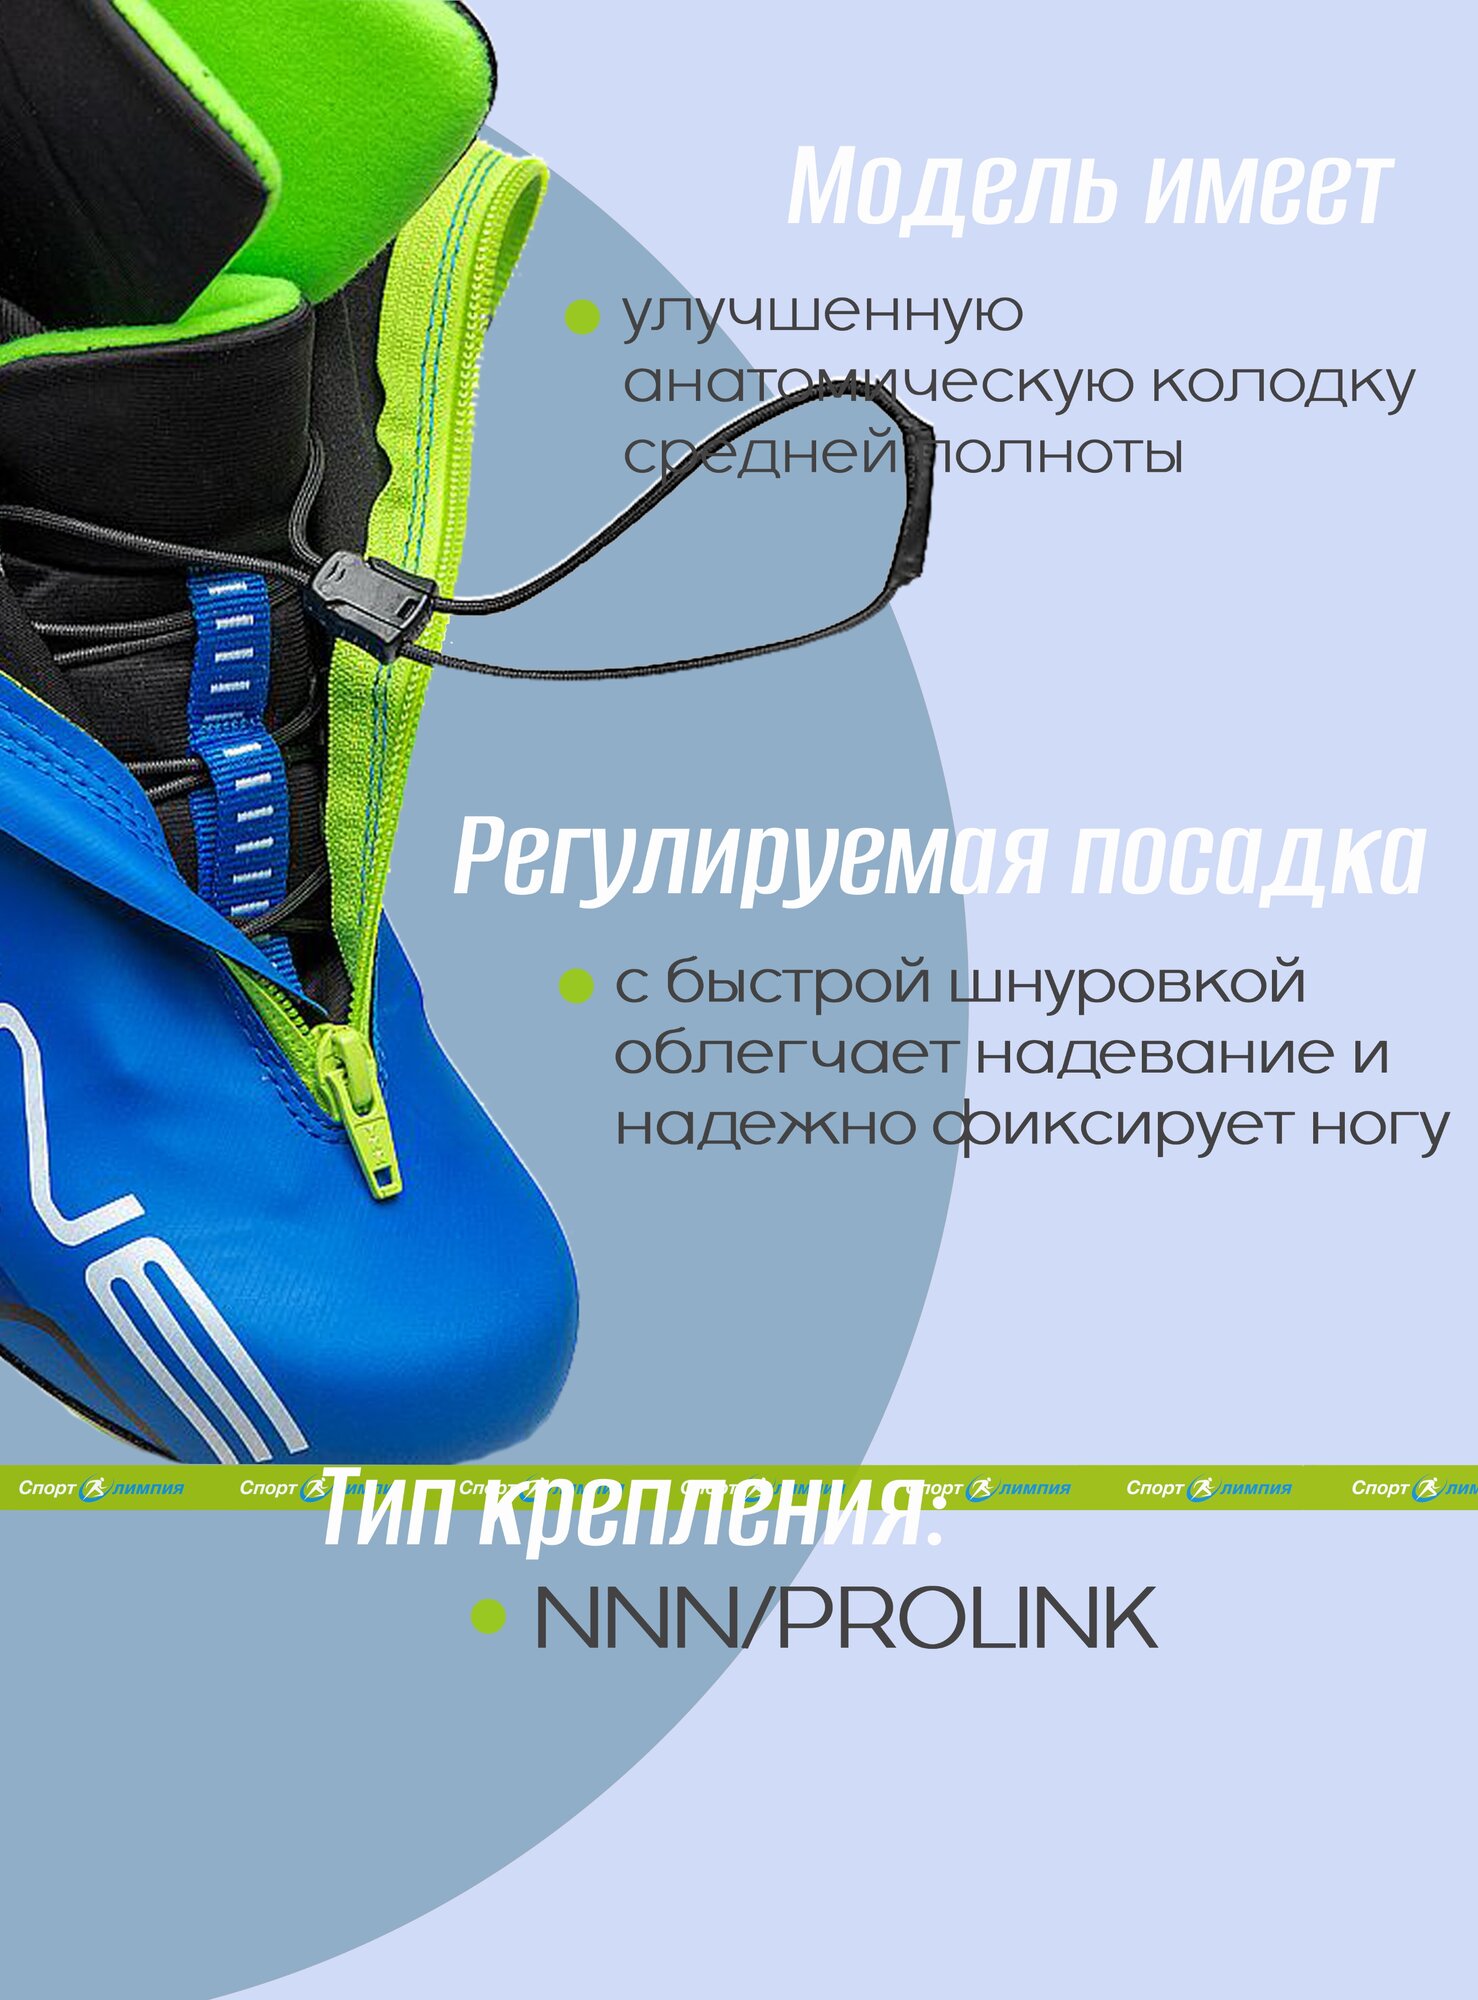 Ботинки для беговых лыж Spine Concept Skate PRO, Синий, размер 46 - фото №3